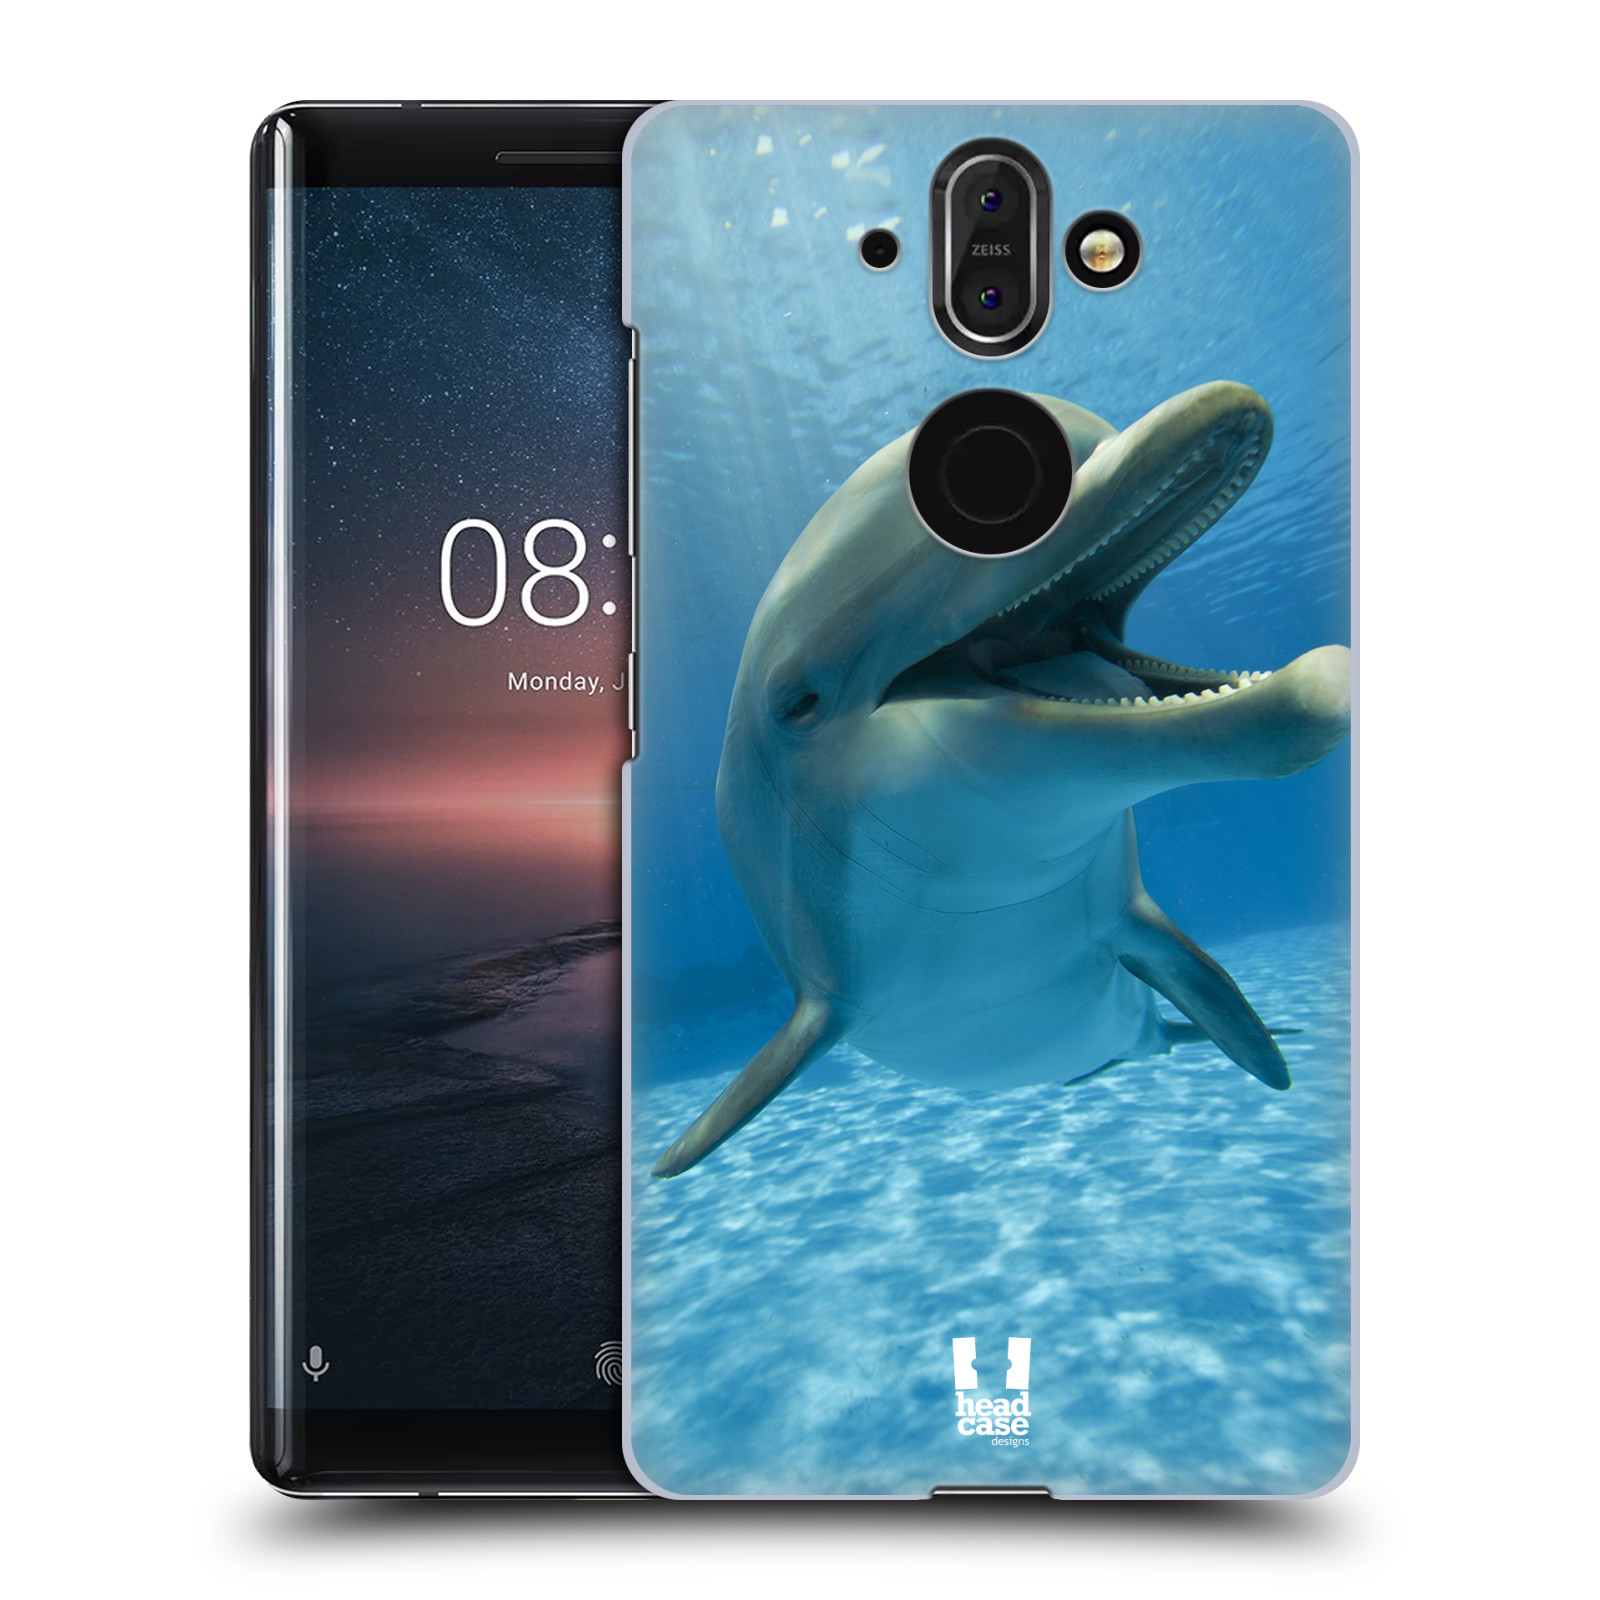 Zadní obal pro mobil Nokia 8 Sirocco - HEAD CASE - Svět zvířat delfín v moři